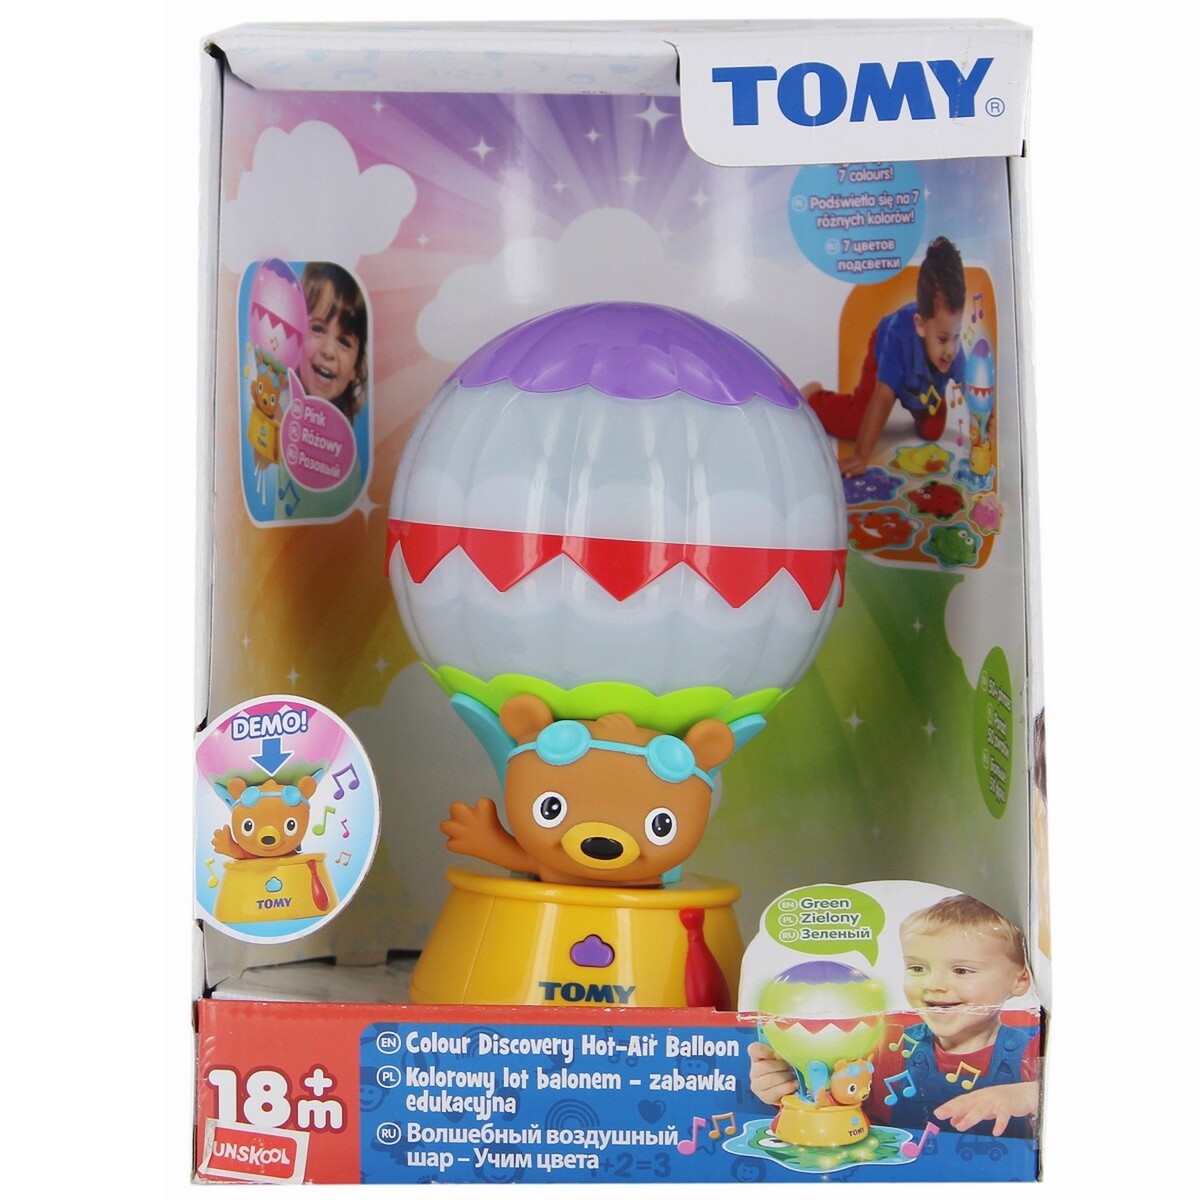 Tomy Air Balloon 7142000